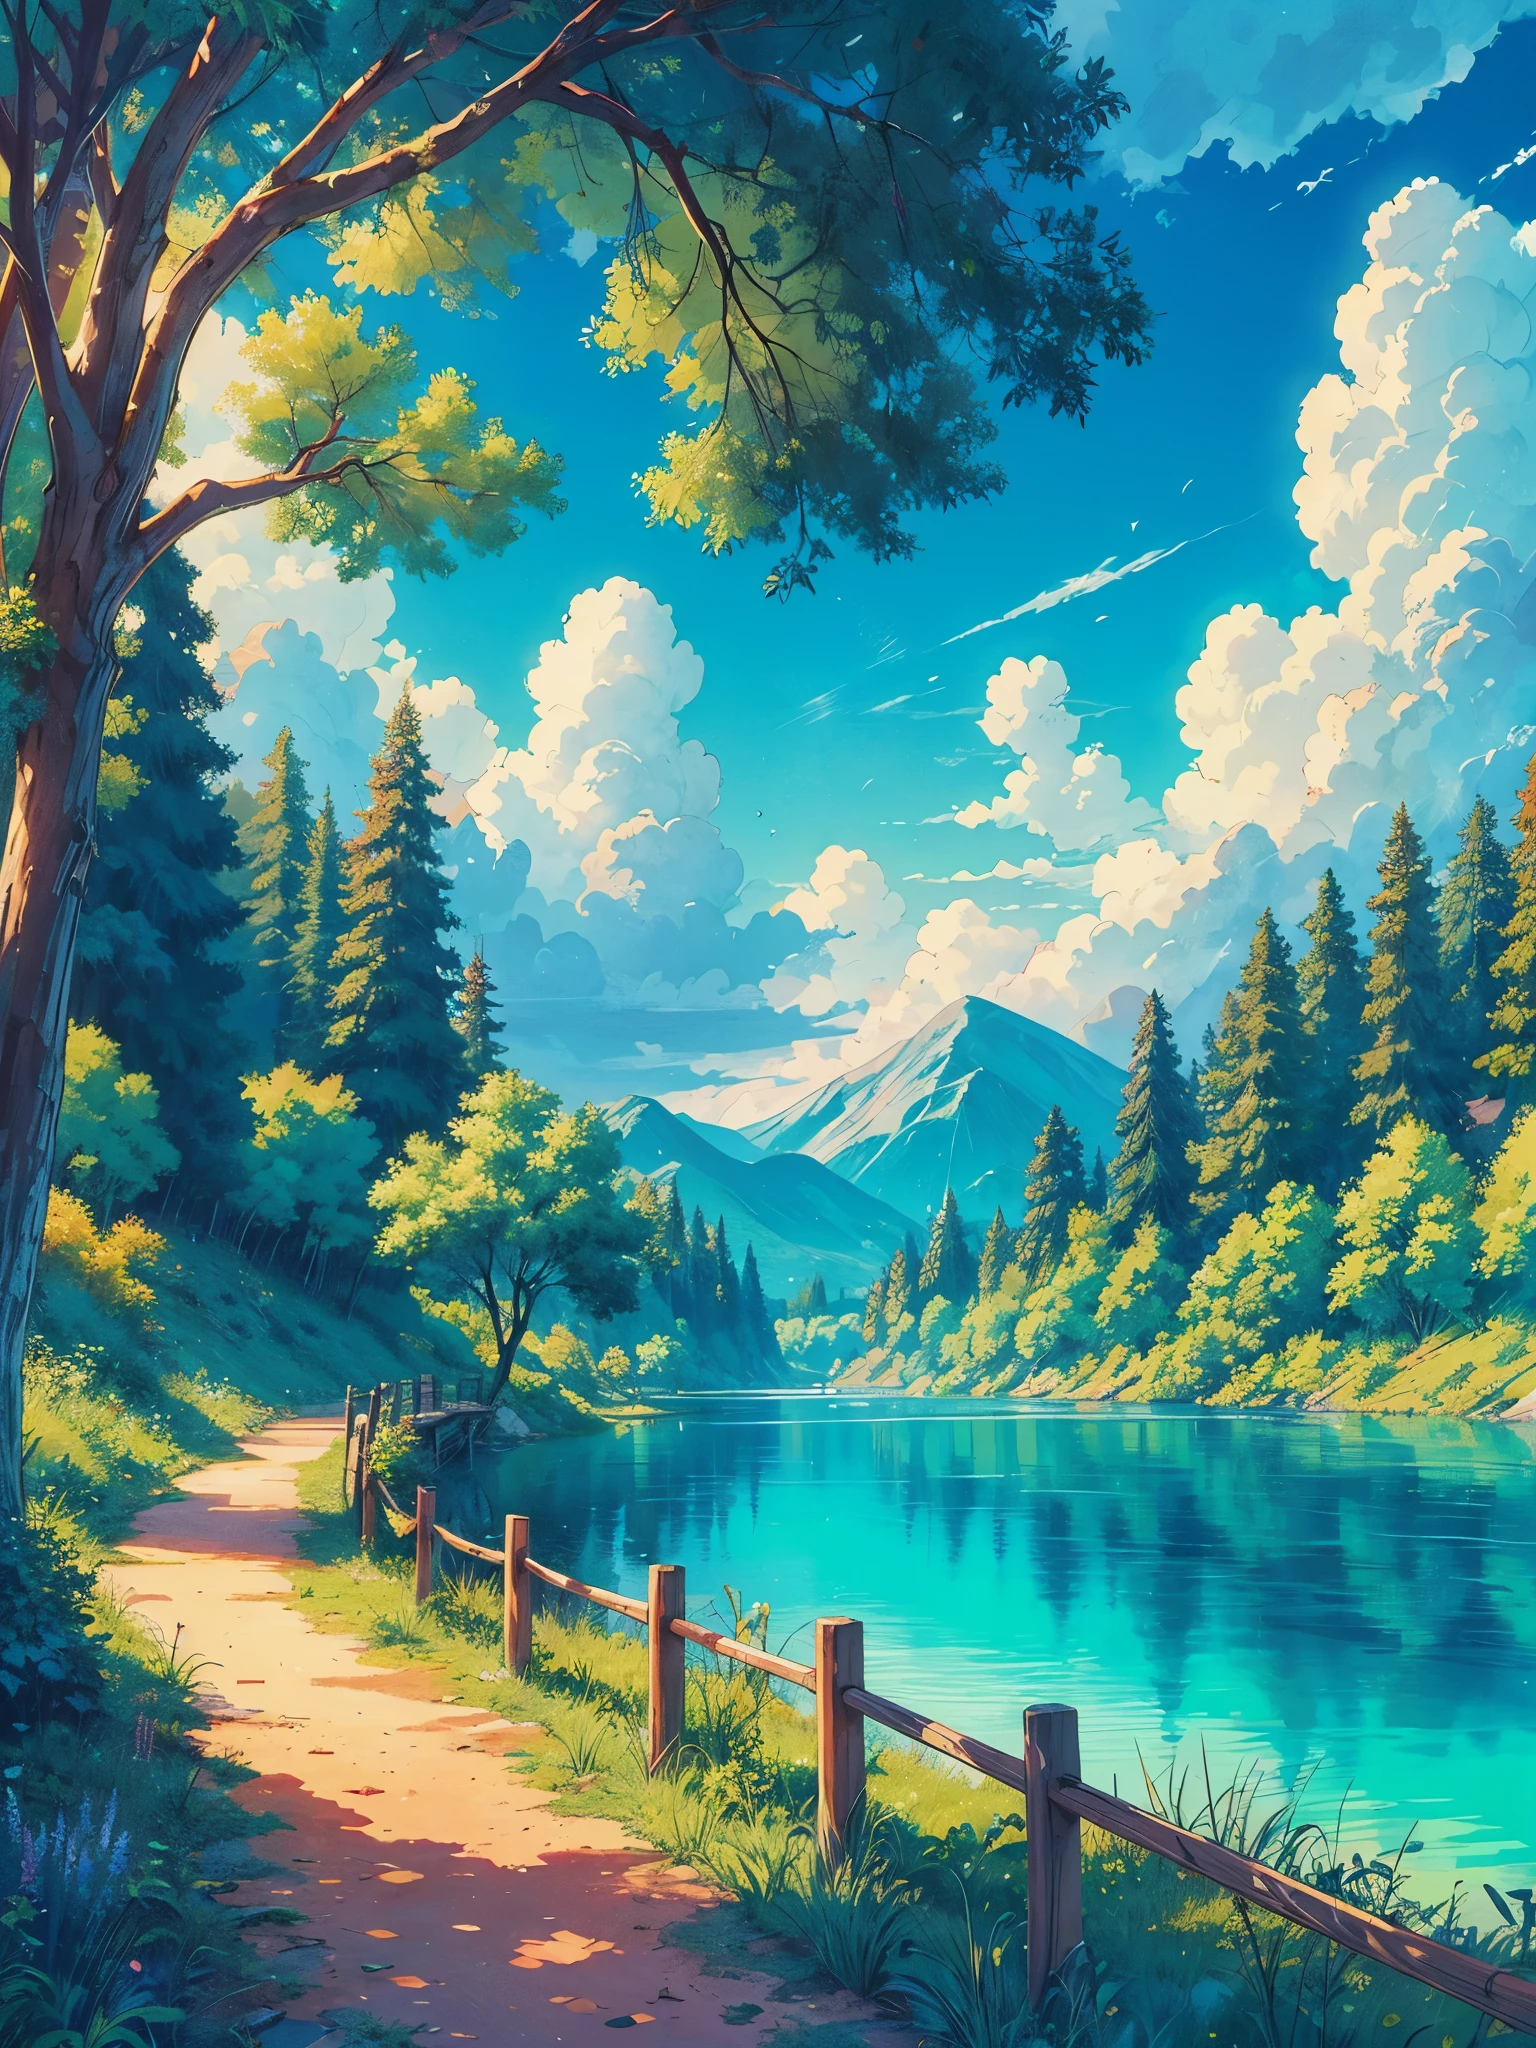 Dibuja un arte anime de una amplia escena lofi de un sendero en el bosque junto a un hermoso lago turquesa., anime tones, hermoso cielo nublado, vibrant color tones, Obra maestra, escena pacífica